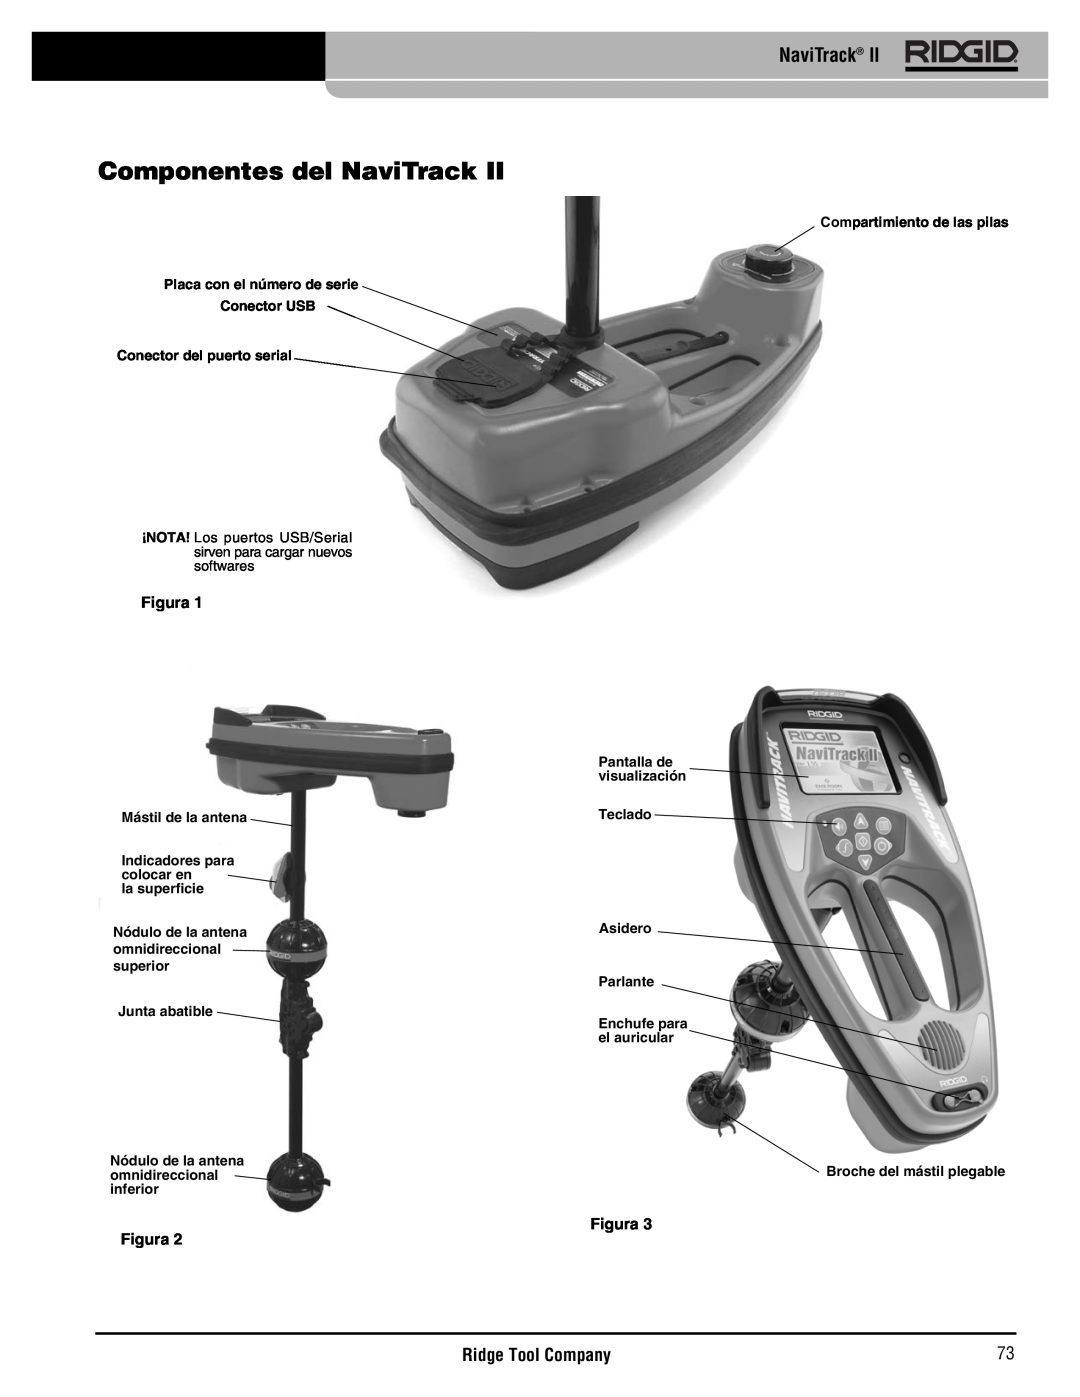 RIDGID Metal Detector manual Componentes del NaviTrack, Ridge Tool Company, Figura 